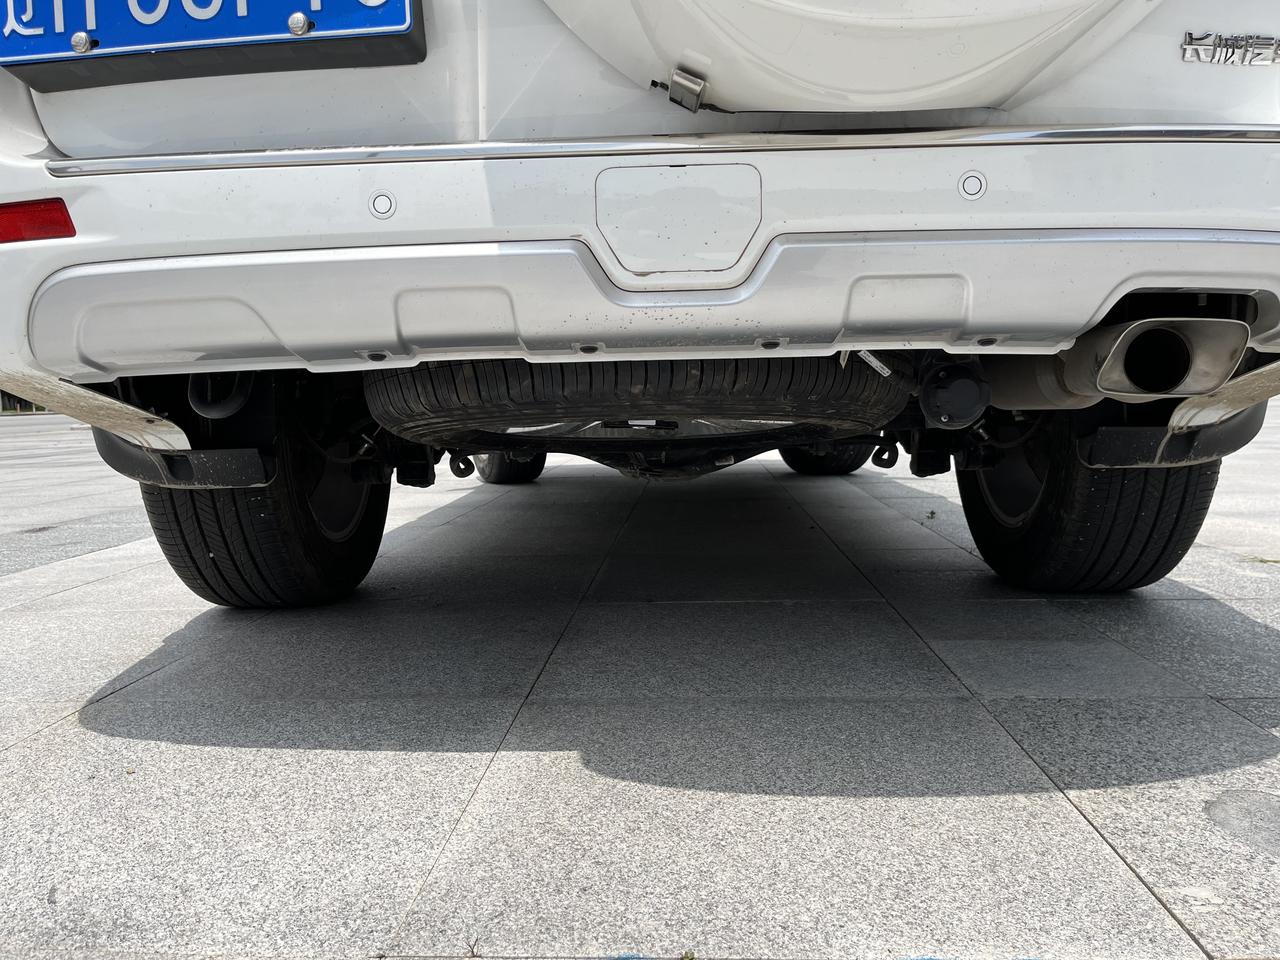 备胎放车底合理吗？哈弗H9的备胎位置在后备箱尾门之外，不过有的说这么容易造成尾门下沉，就改为放到车底，不然也没有其